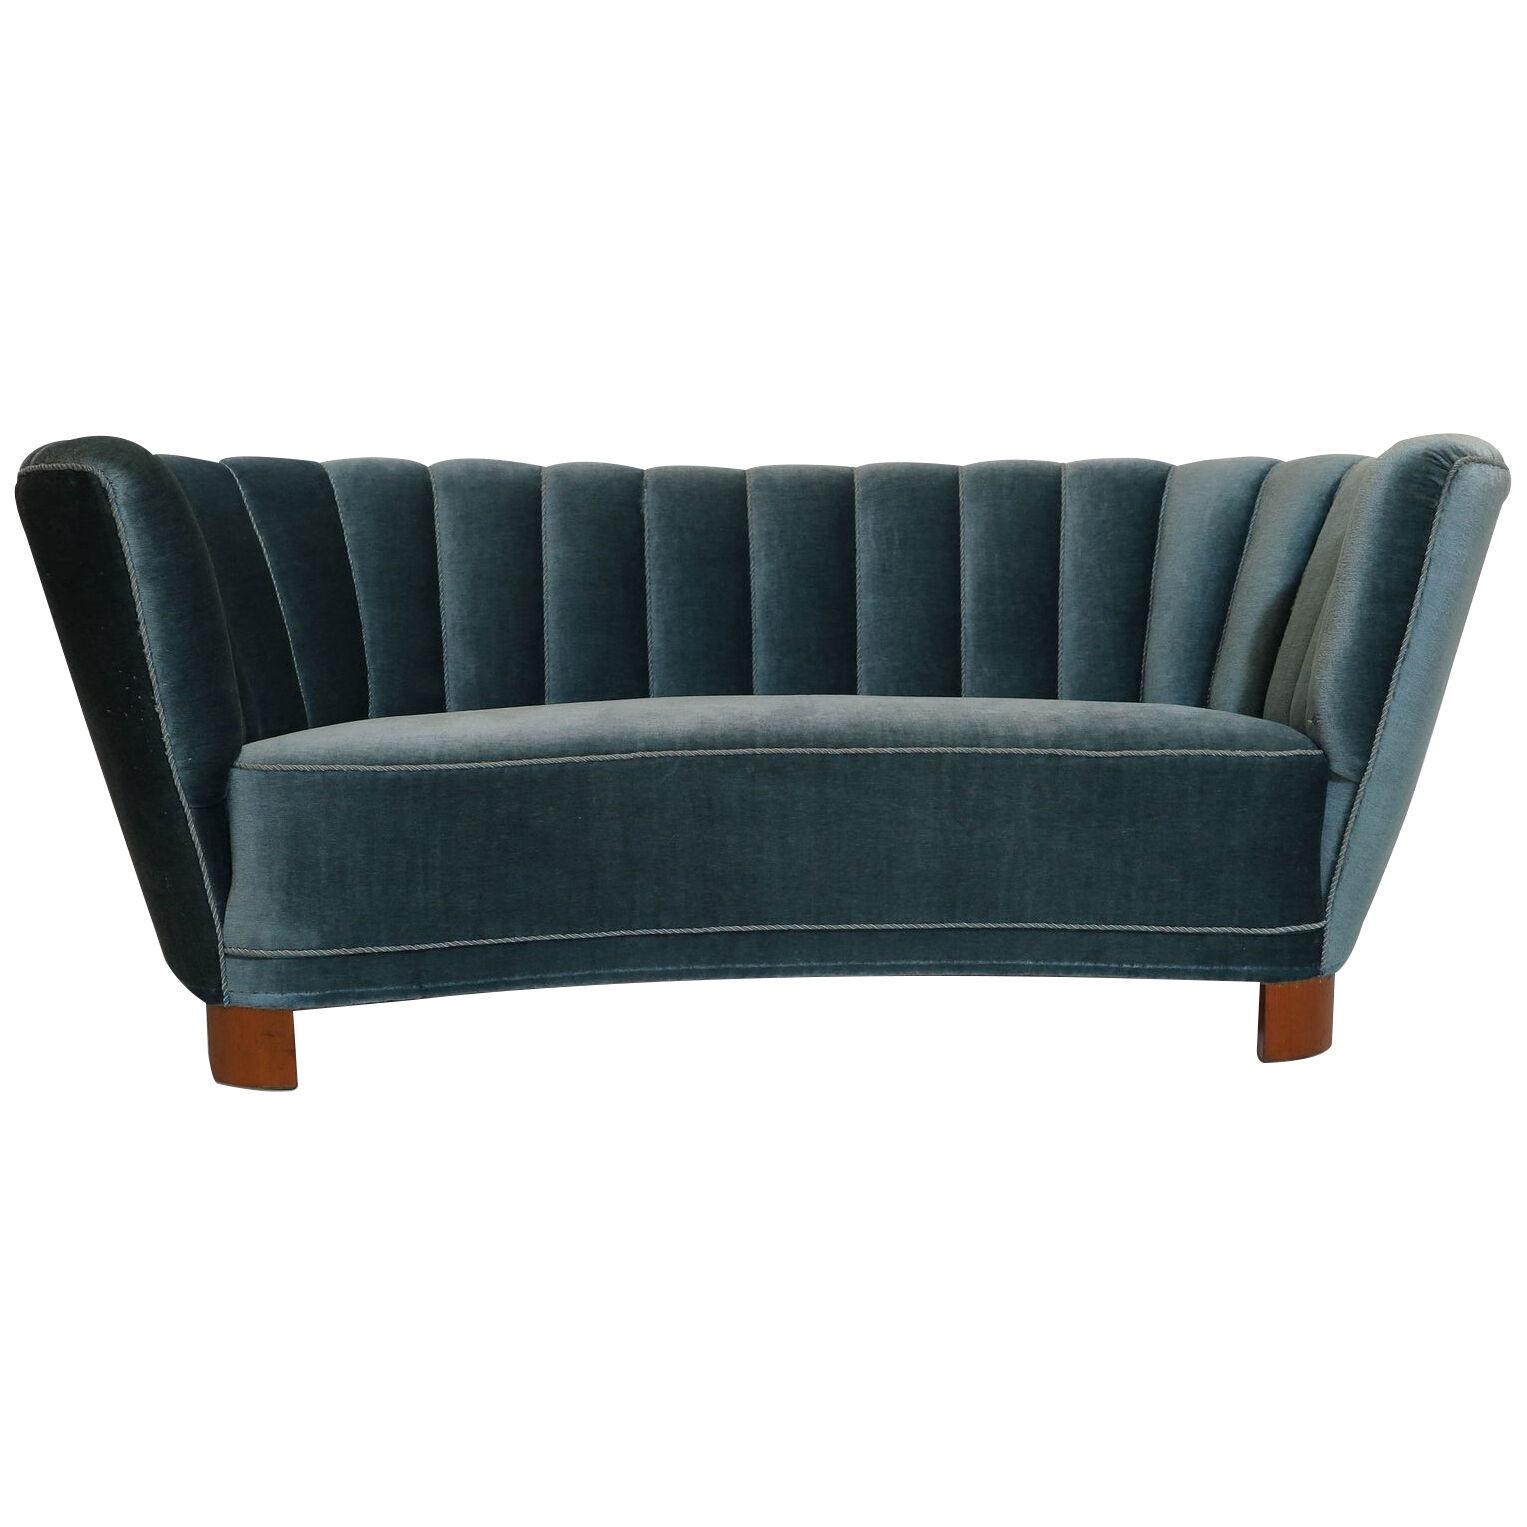 1940's Danish Deco Sofa in Original Blue Mohair